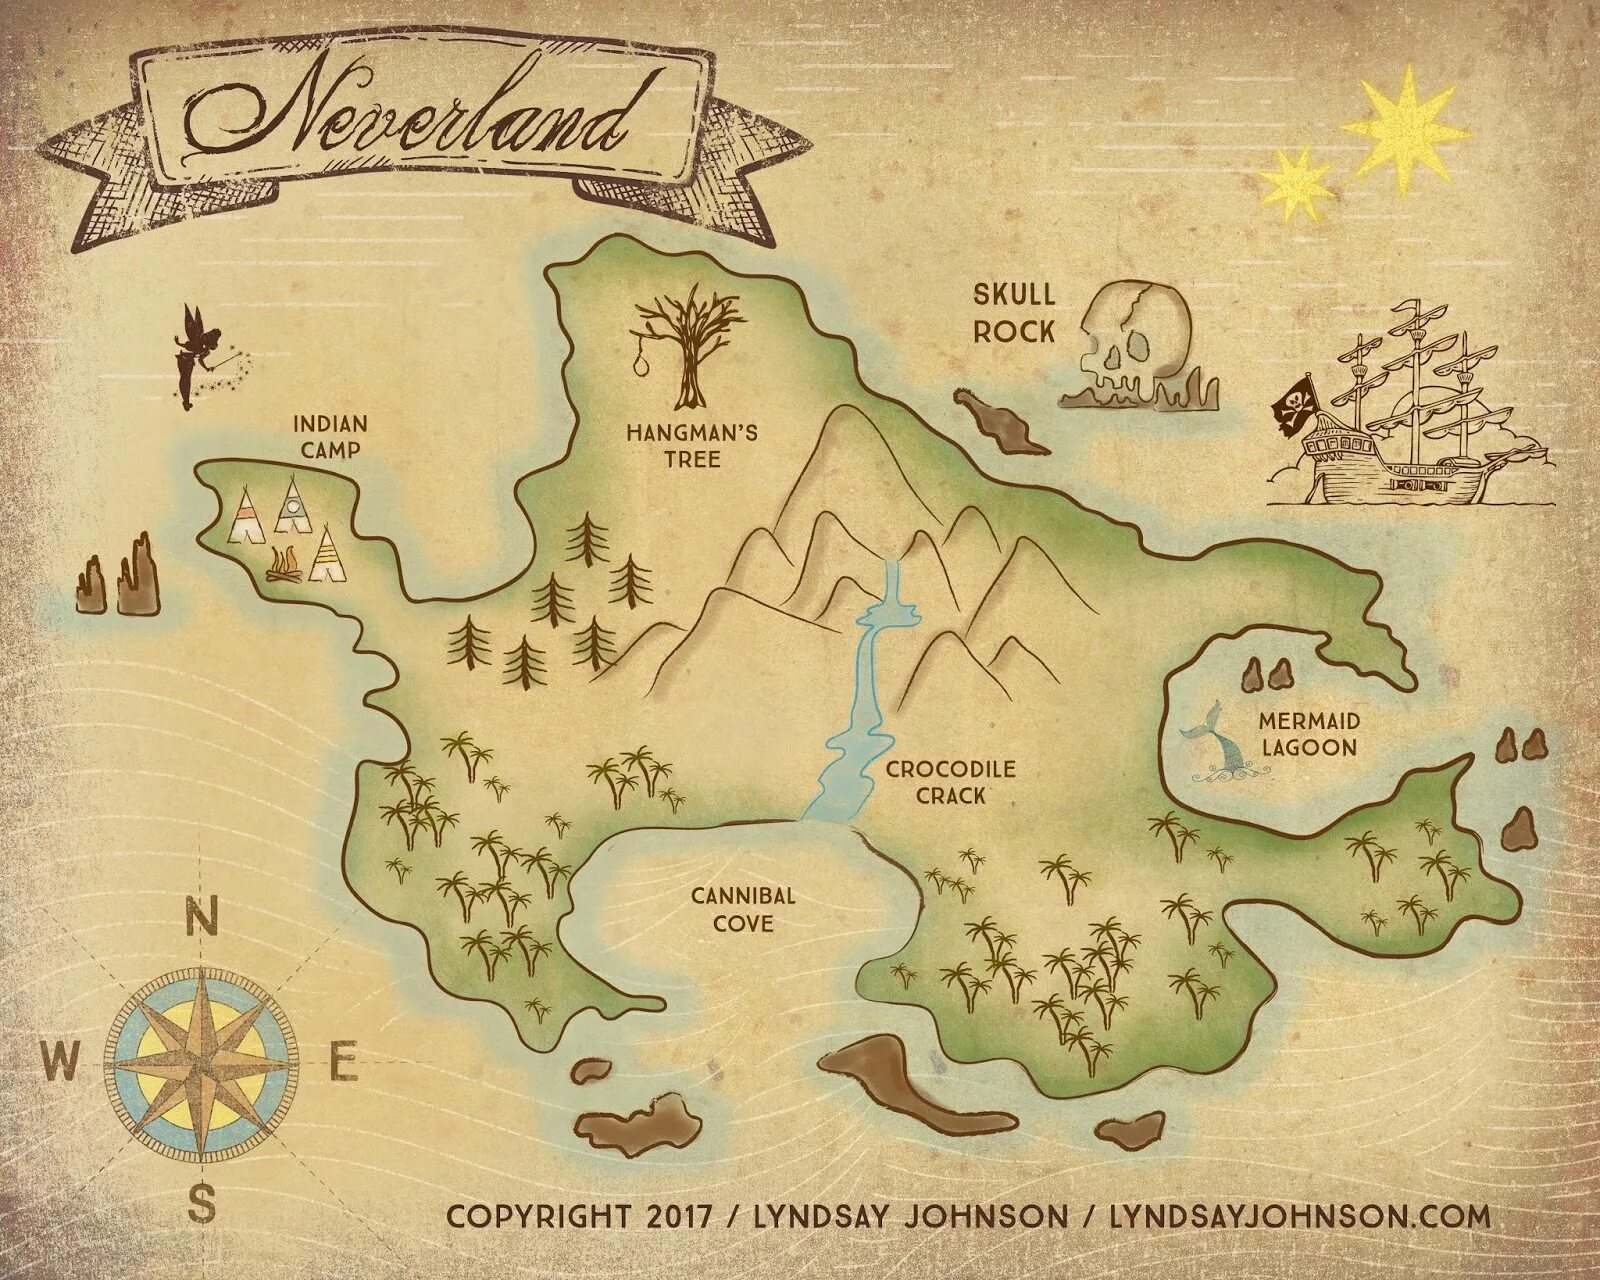 Карта Нетландии Питер Пэн. Нетландия однажды в сказке карта. Остров Неверленда Питер Пэн. Неверленд Питер пен карта. Где живет пэн